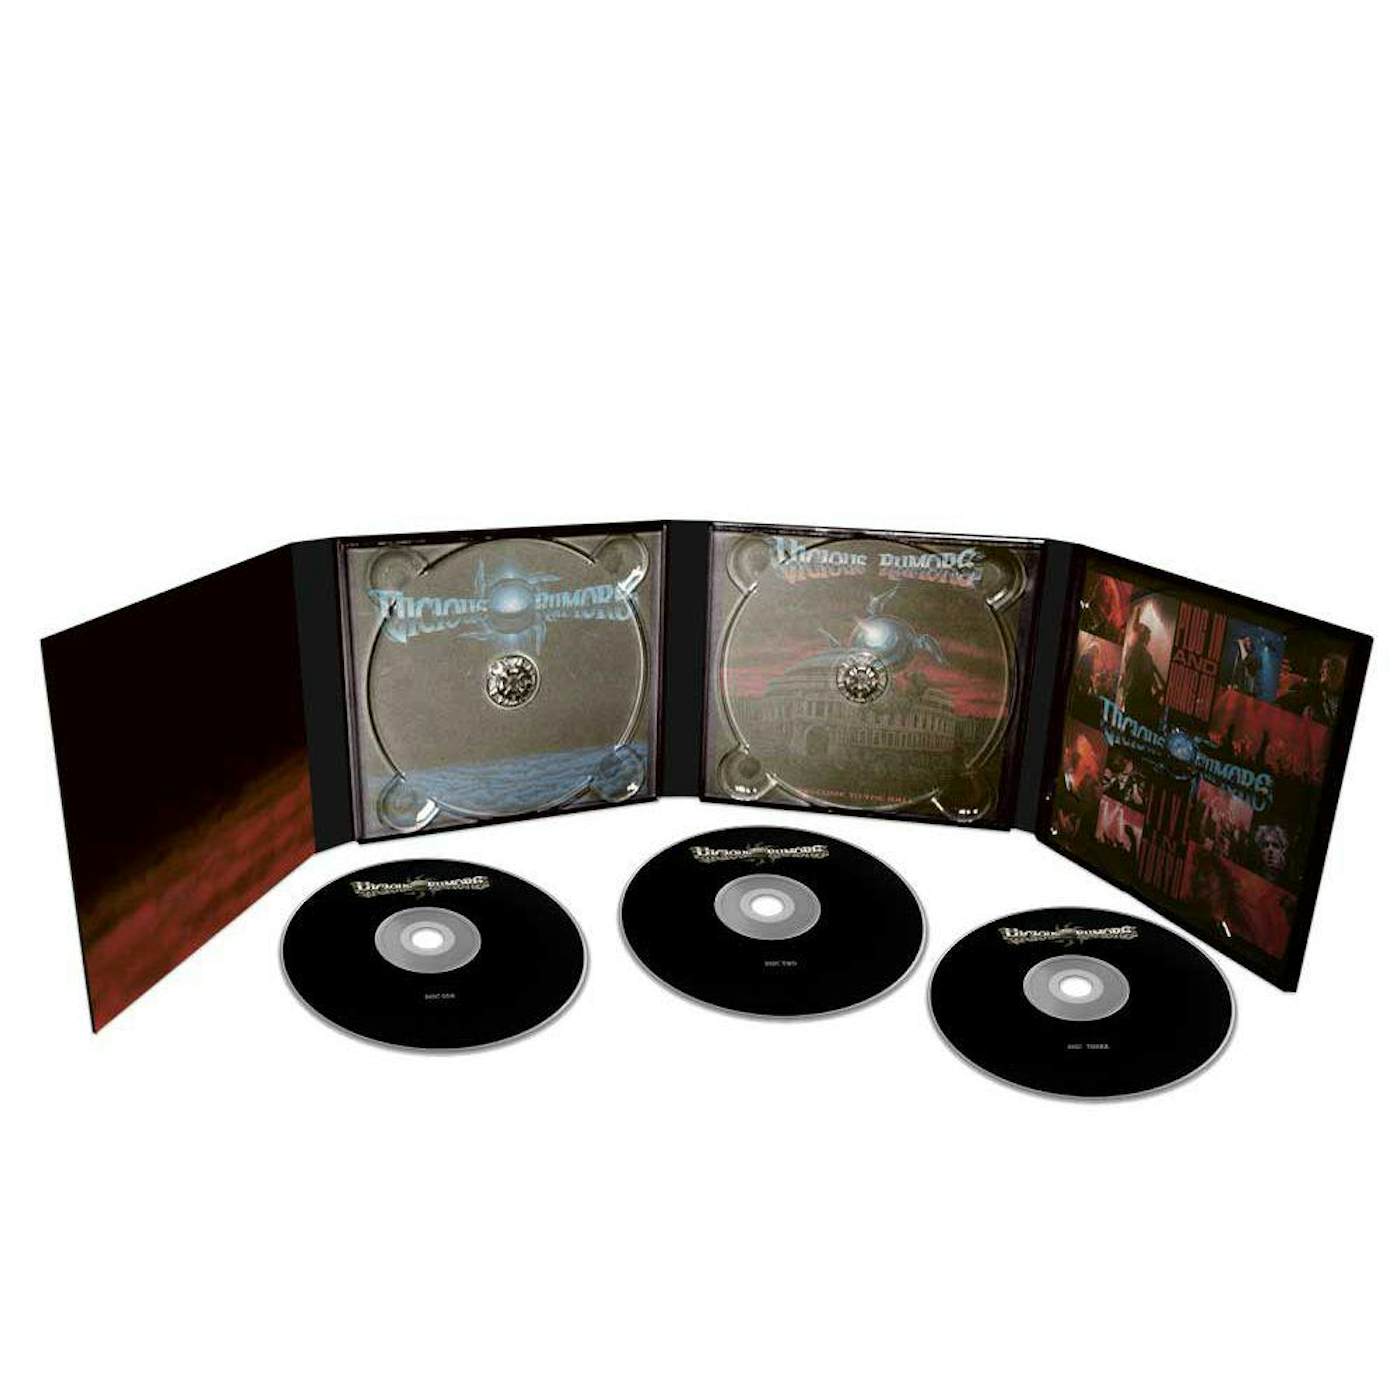 Vicious Rumors ATLANTIC YEARS (3CD/DELUXE DIGI PACK) CD